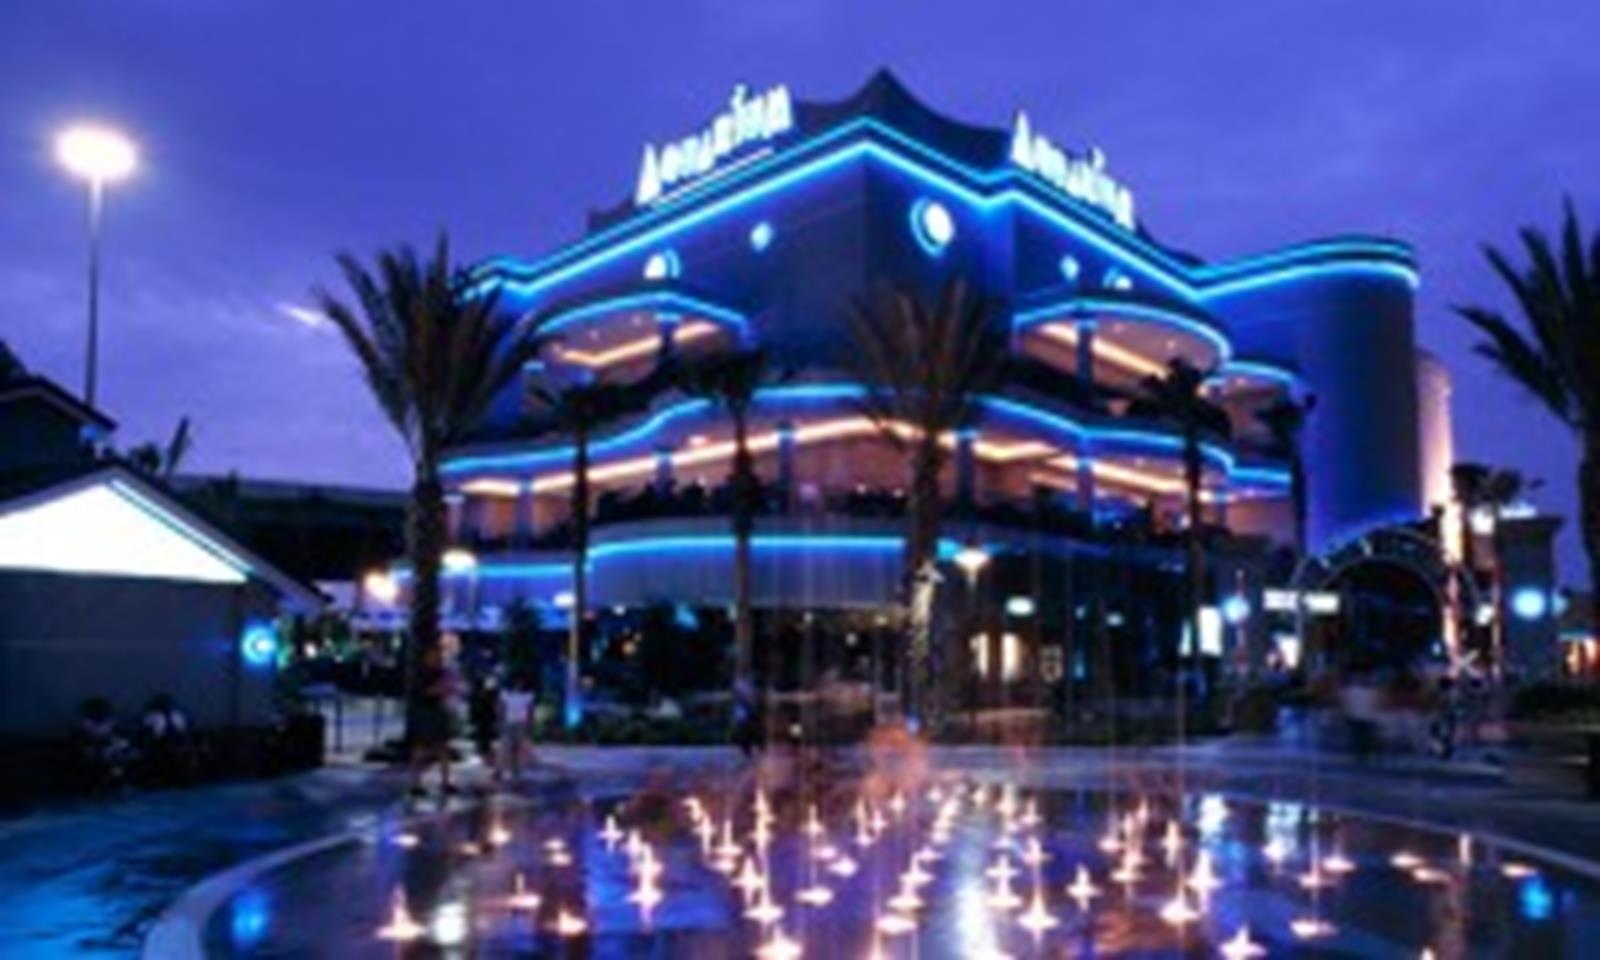 Aquarium Restaurant